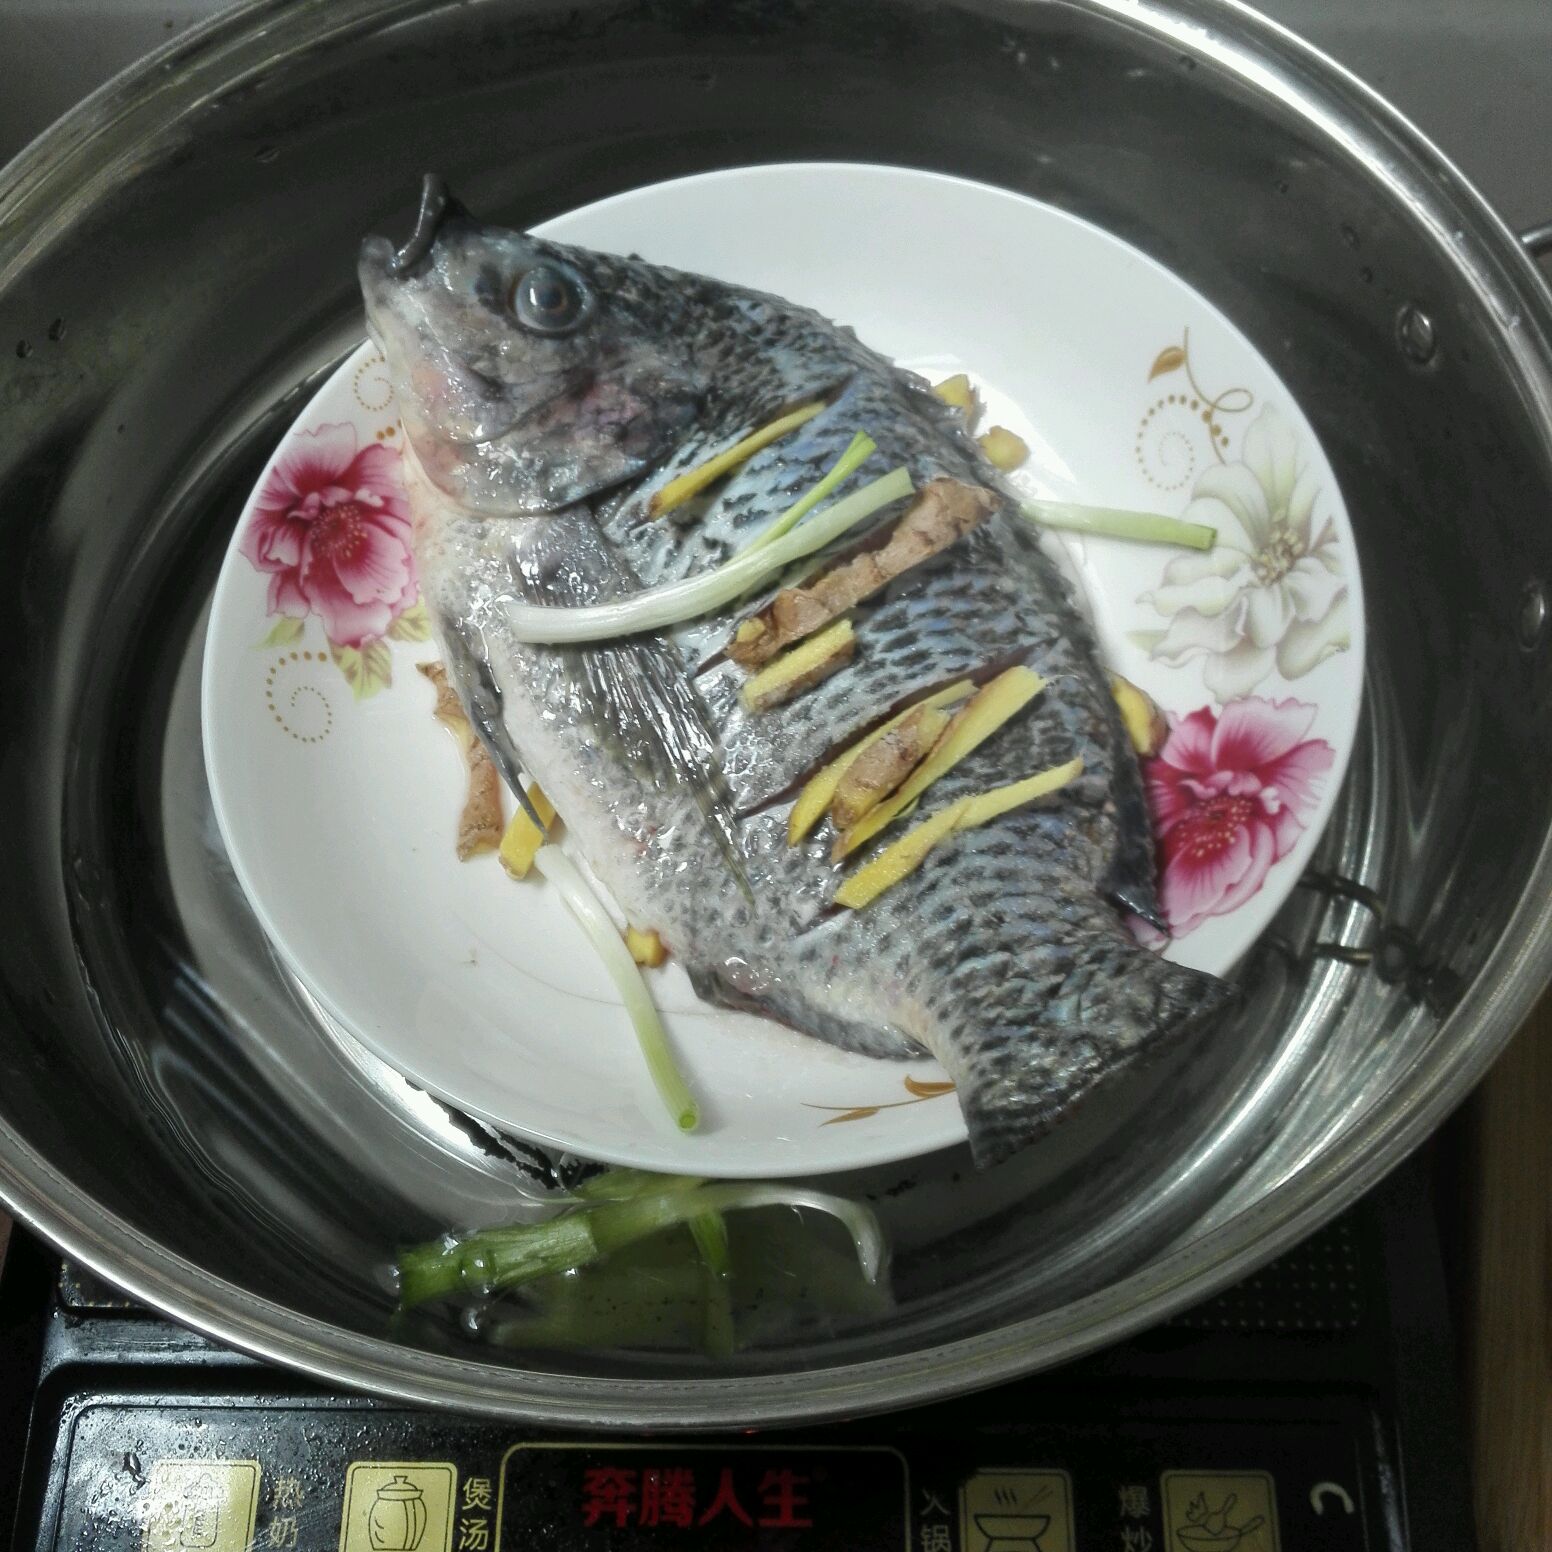 清蒸鲈鱼2.0 | 自制蒸鱼酱油、在家轻松做-何时下厨-何时下厨-哔哩哔哩视频